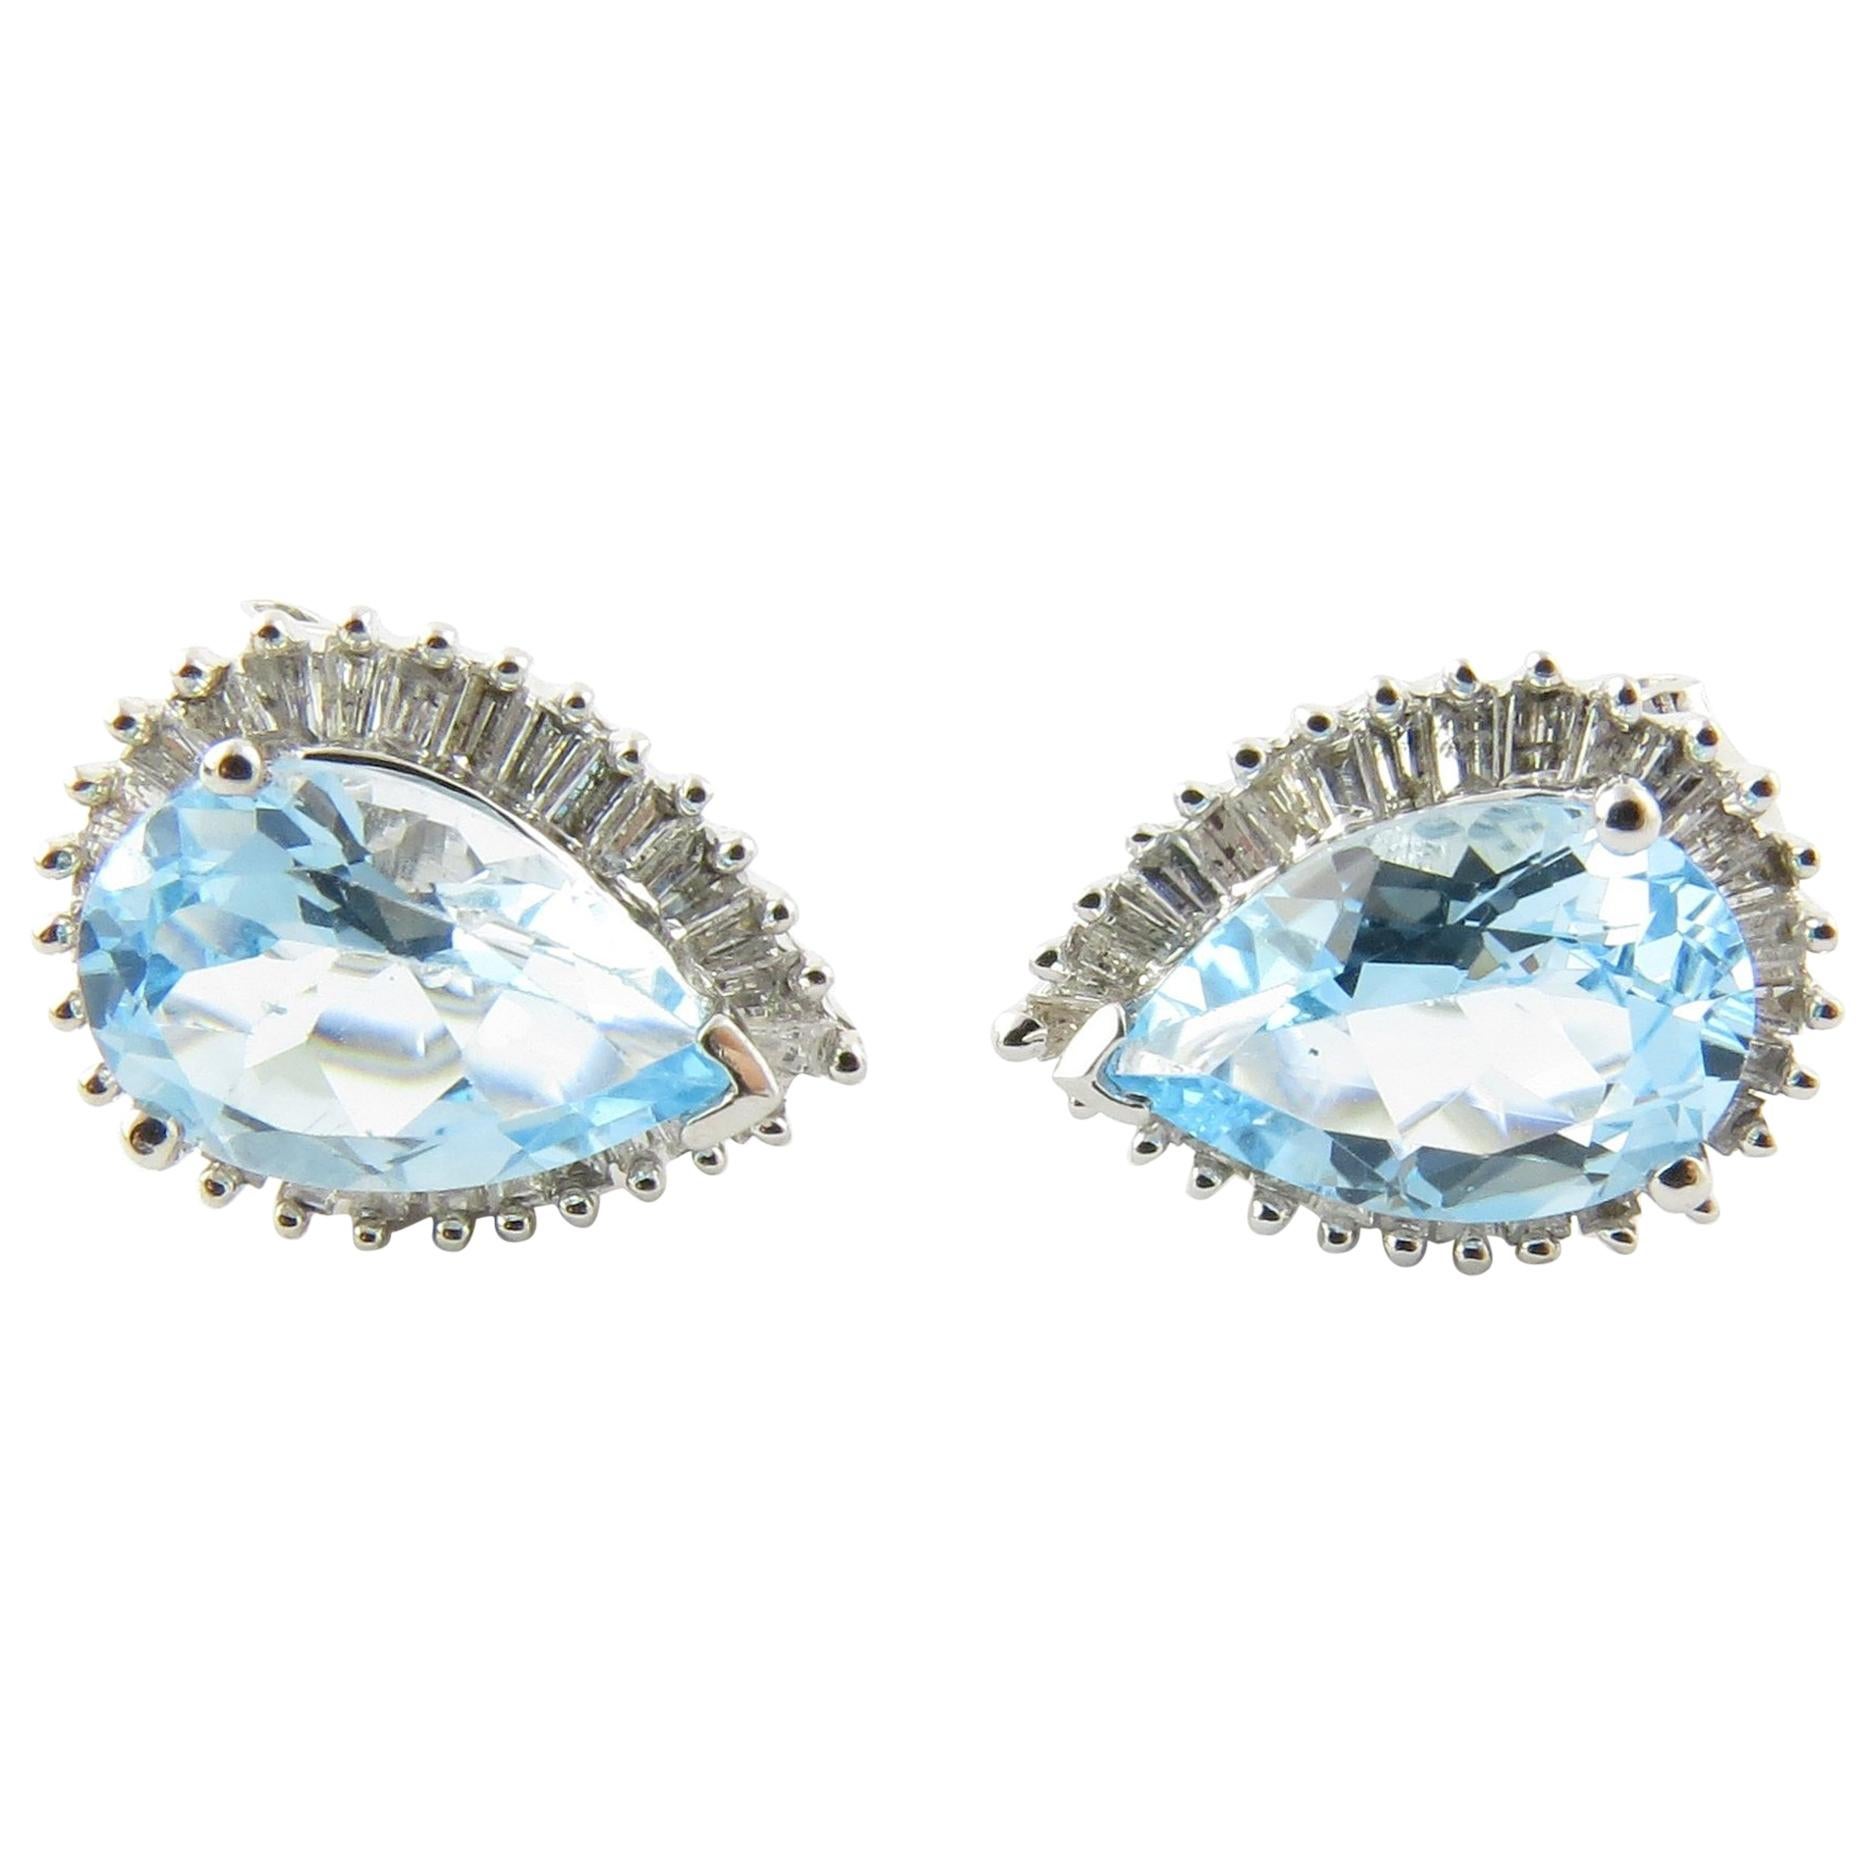 14 Karat White Gold Blue Topaz and Diamond Earrings